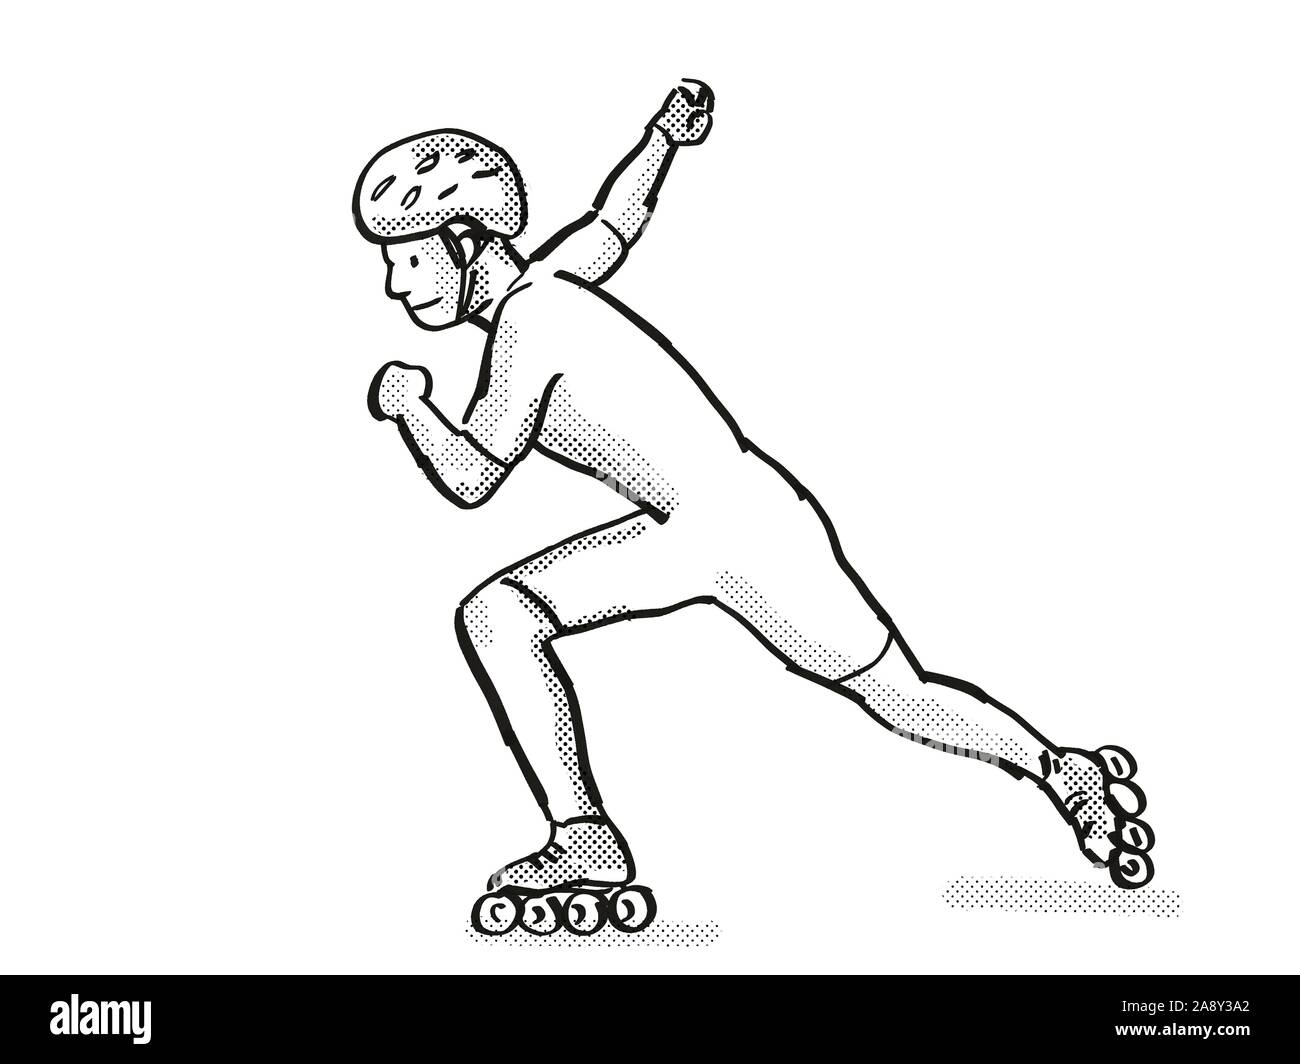 Retro cartoon style dessin d'un patineur de l'athlète de patinage de vitesse en ligne sur fond isolé en noir et blanc Banque D'Images